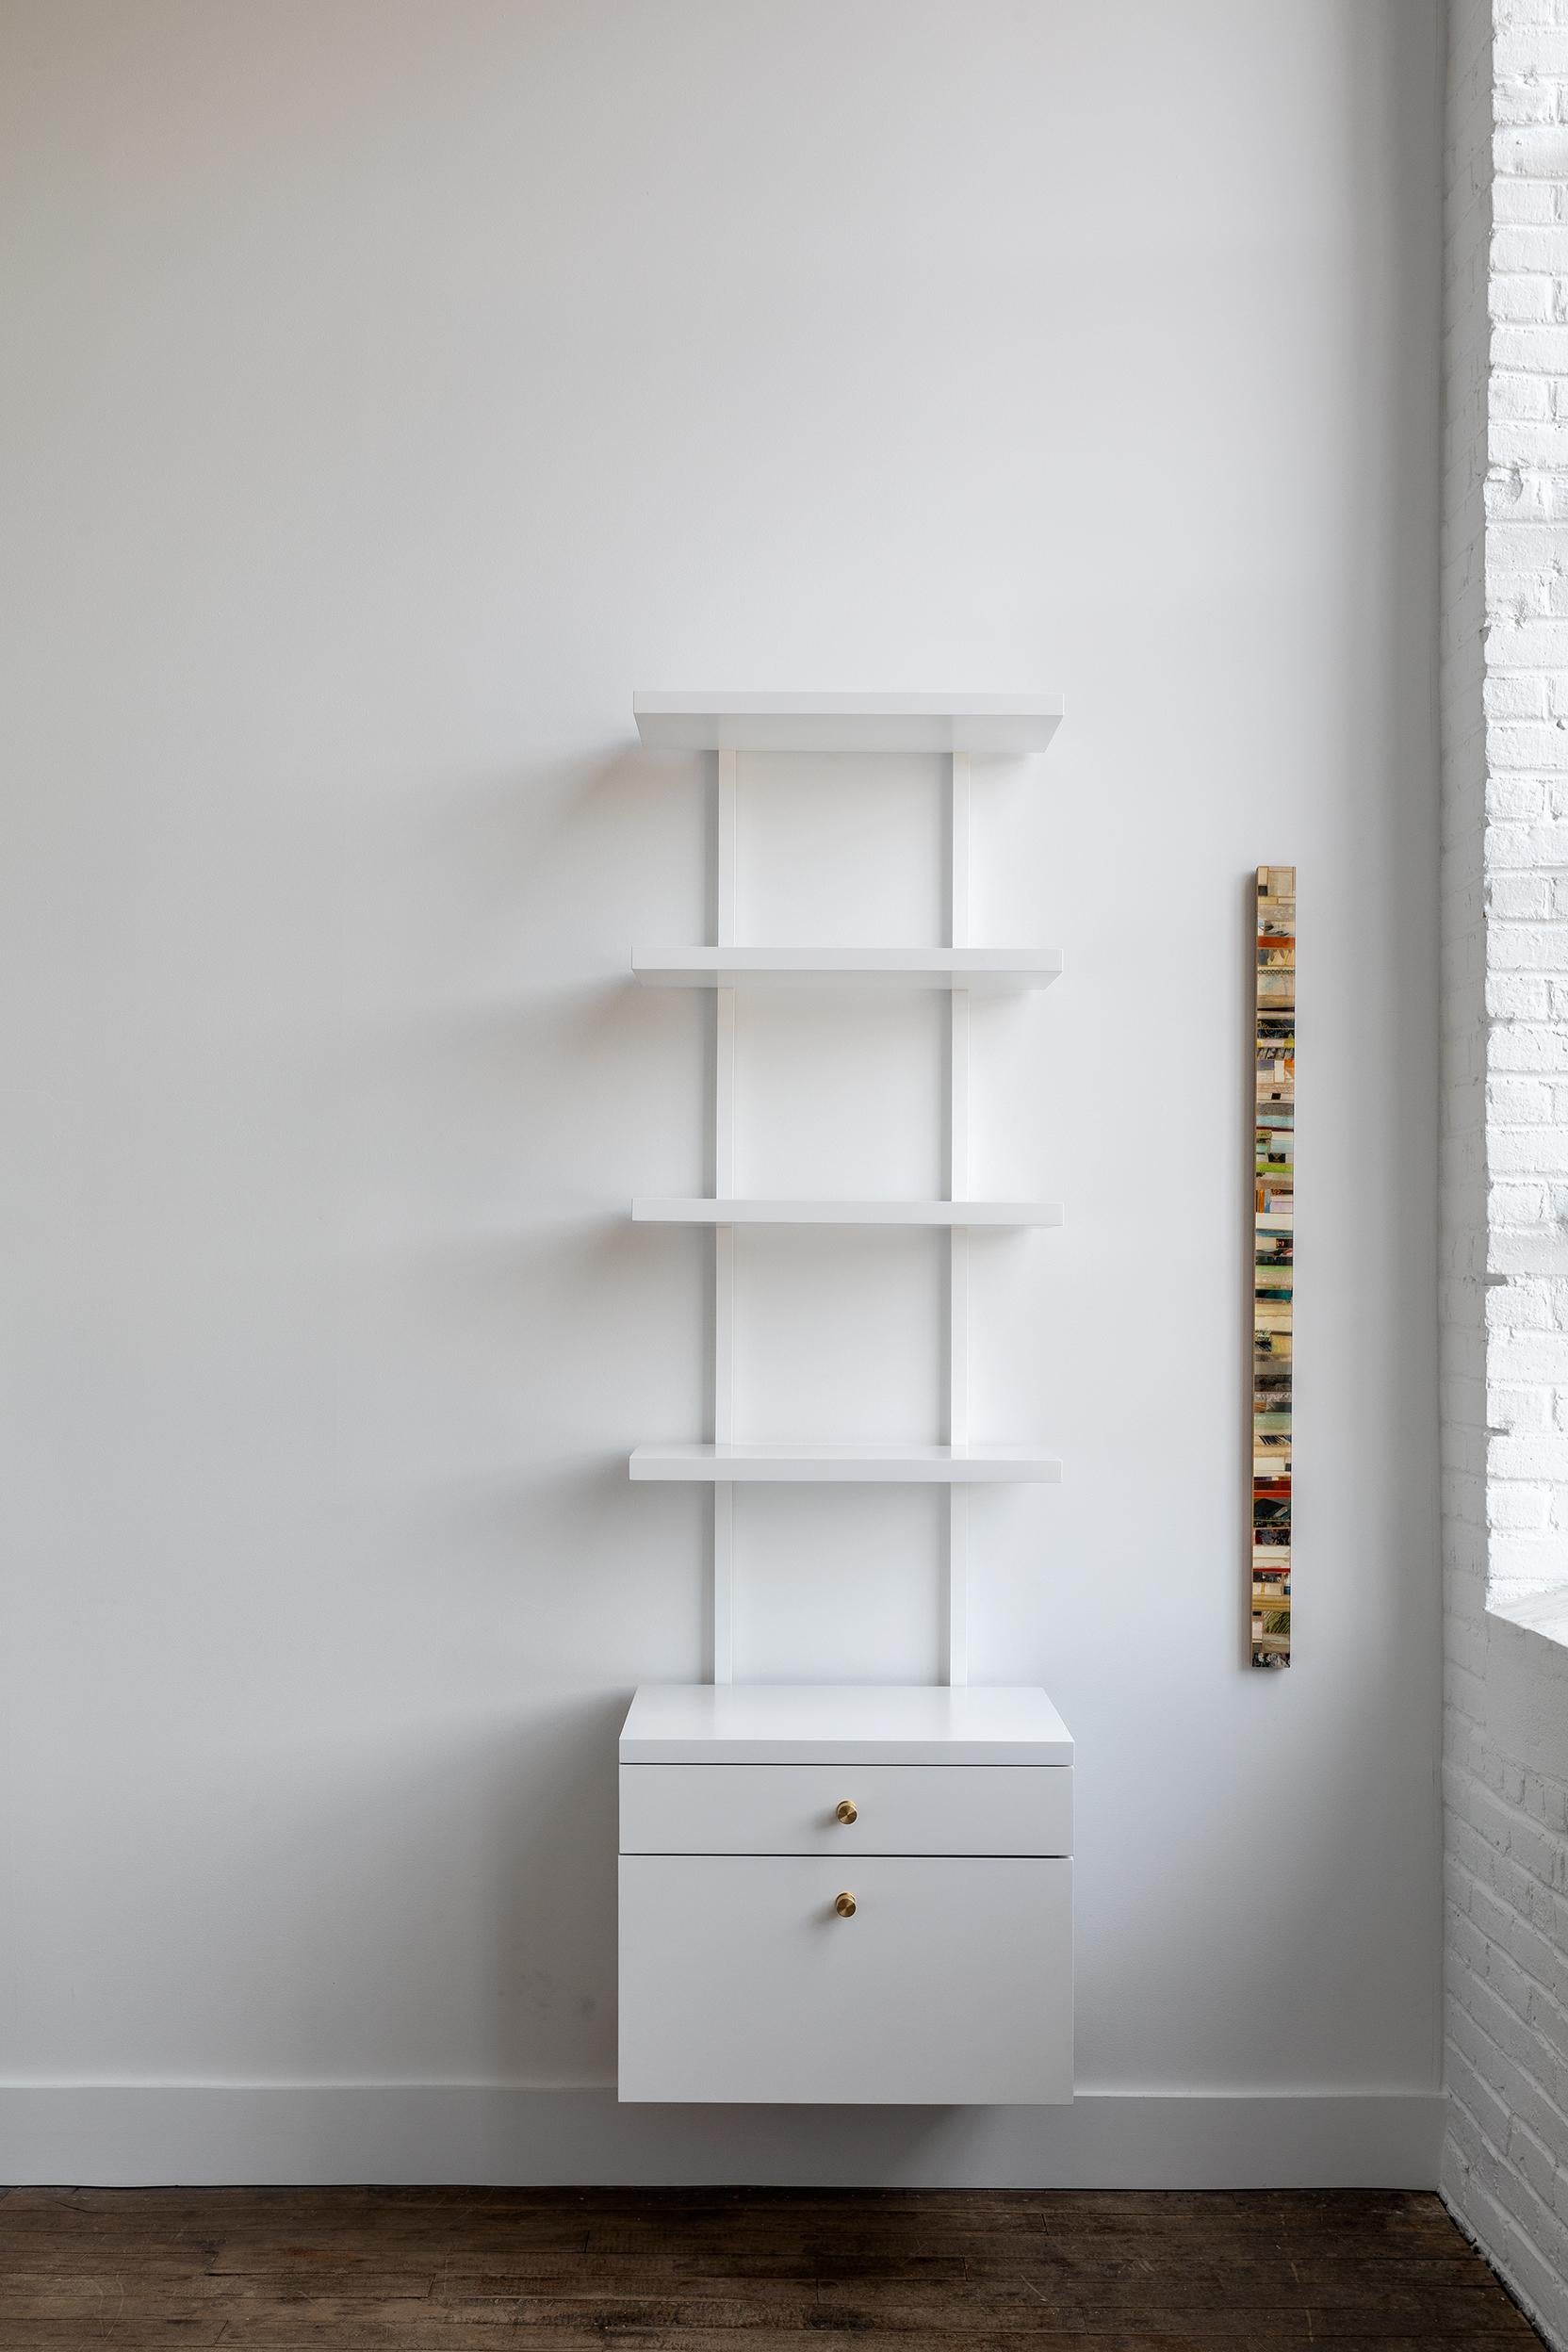 Plus qu'un simple système d'étagères, l'unité murale AS6 est un outil de conception pour créer des meubles muraux distillés à l'essentiel de la ligne, du plan et de la forme. Nous encourageons la combinaison et la configuration sans contrainte de